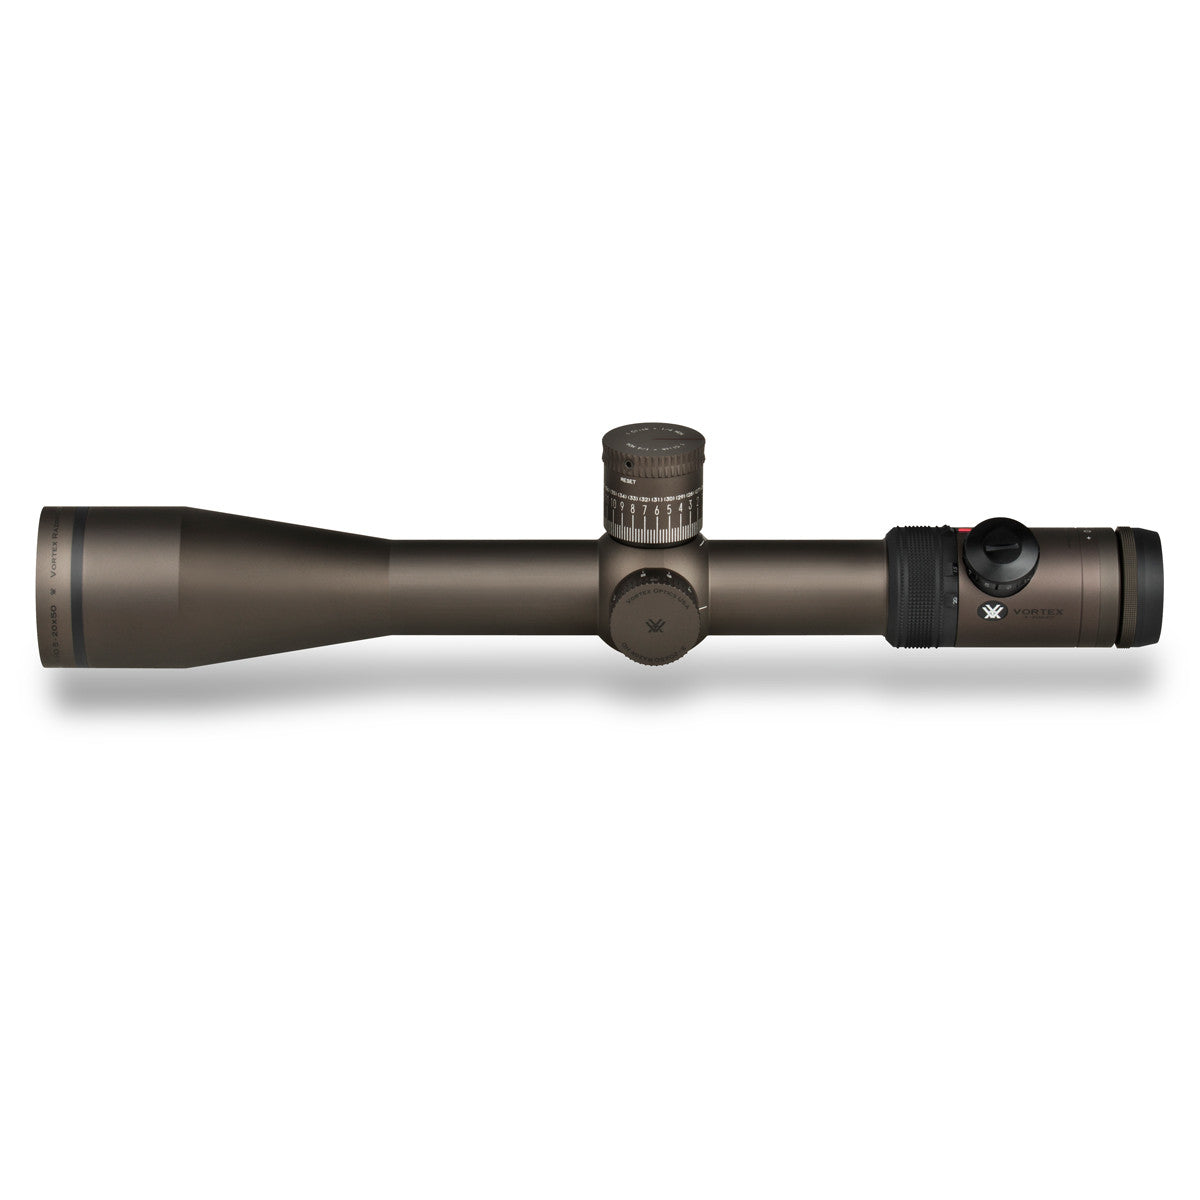 Vortex Razor HD 5-20x50 FFP Riflescope in Vortex Razor HD 5-20x50 FFP Riflescope - goHUNT Shop by GOHUNT | Vortex Optics - GOHUNT Shop